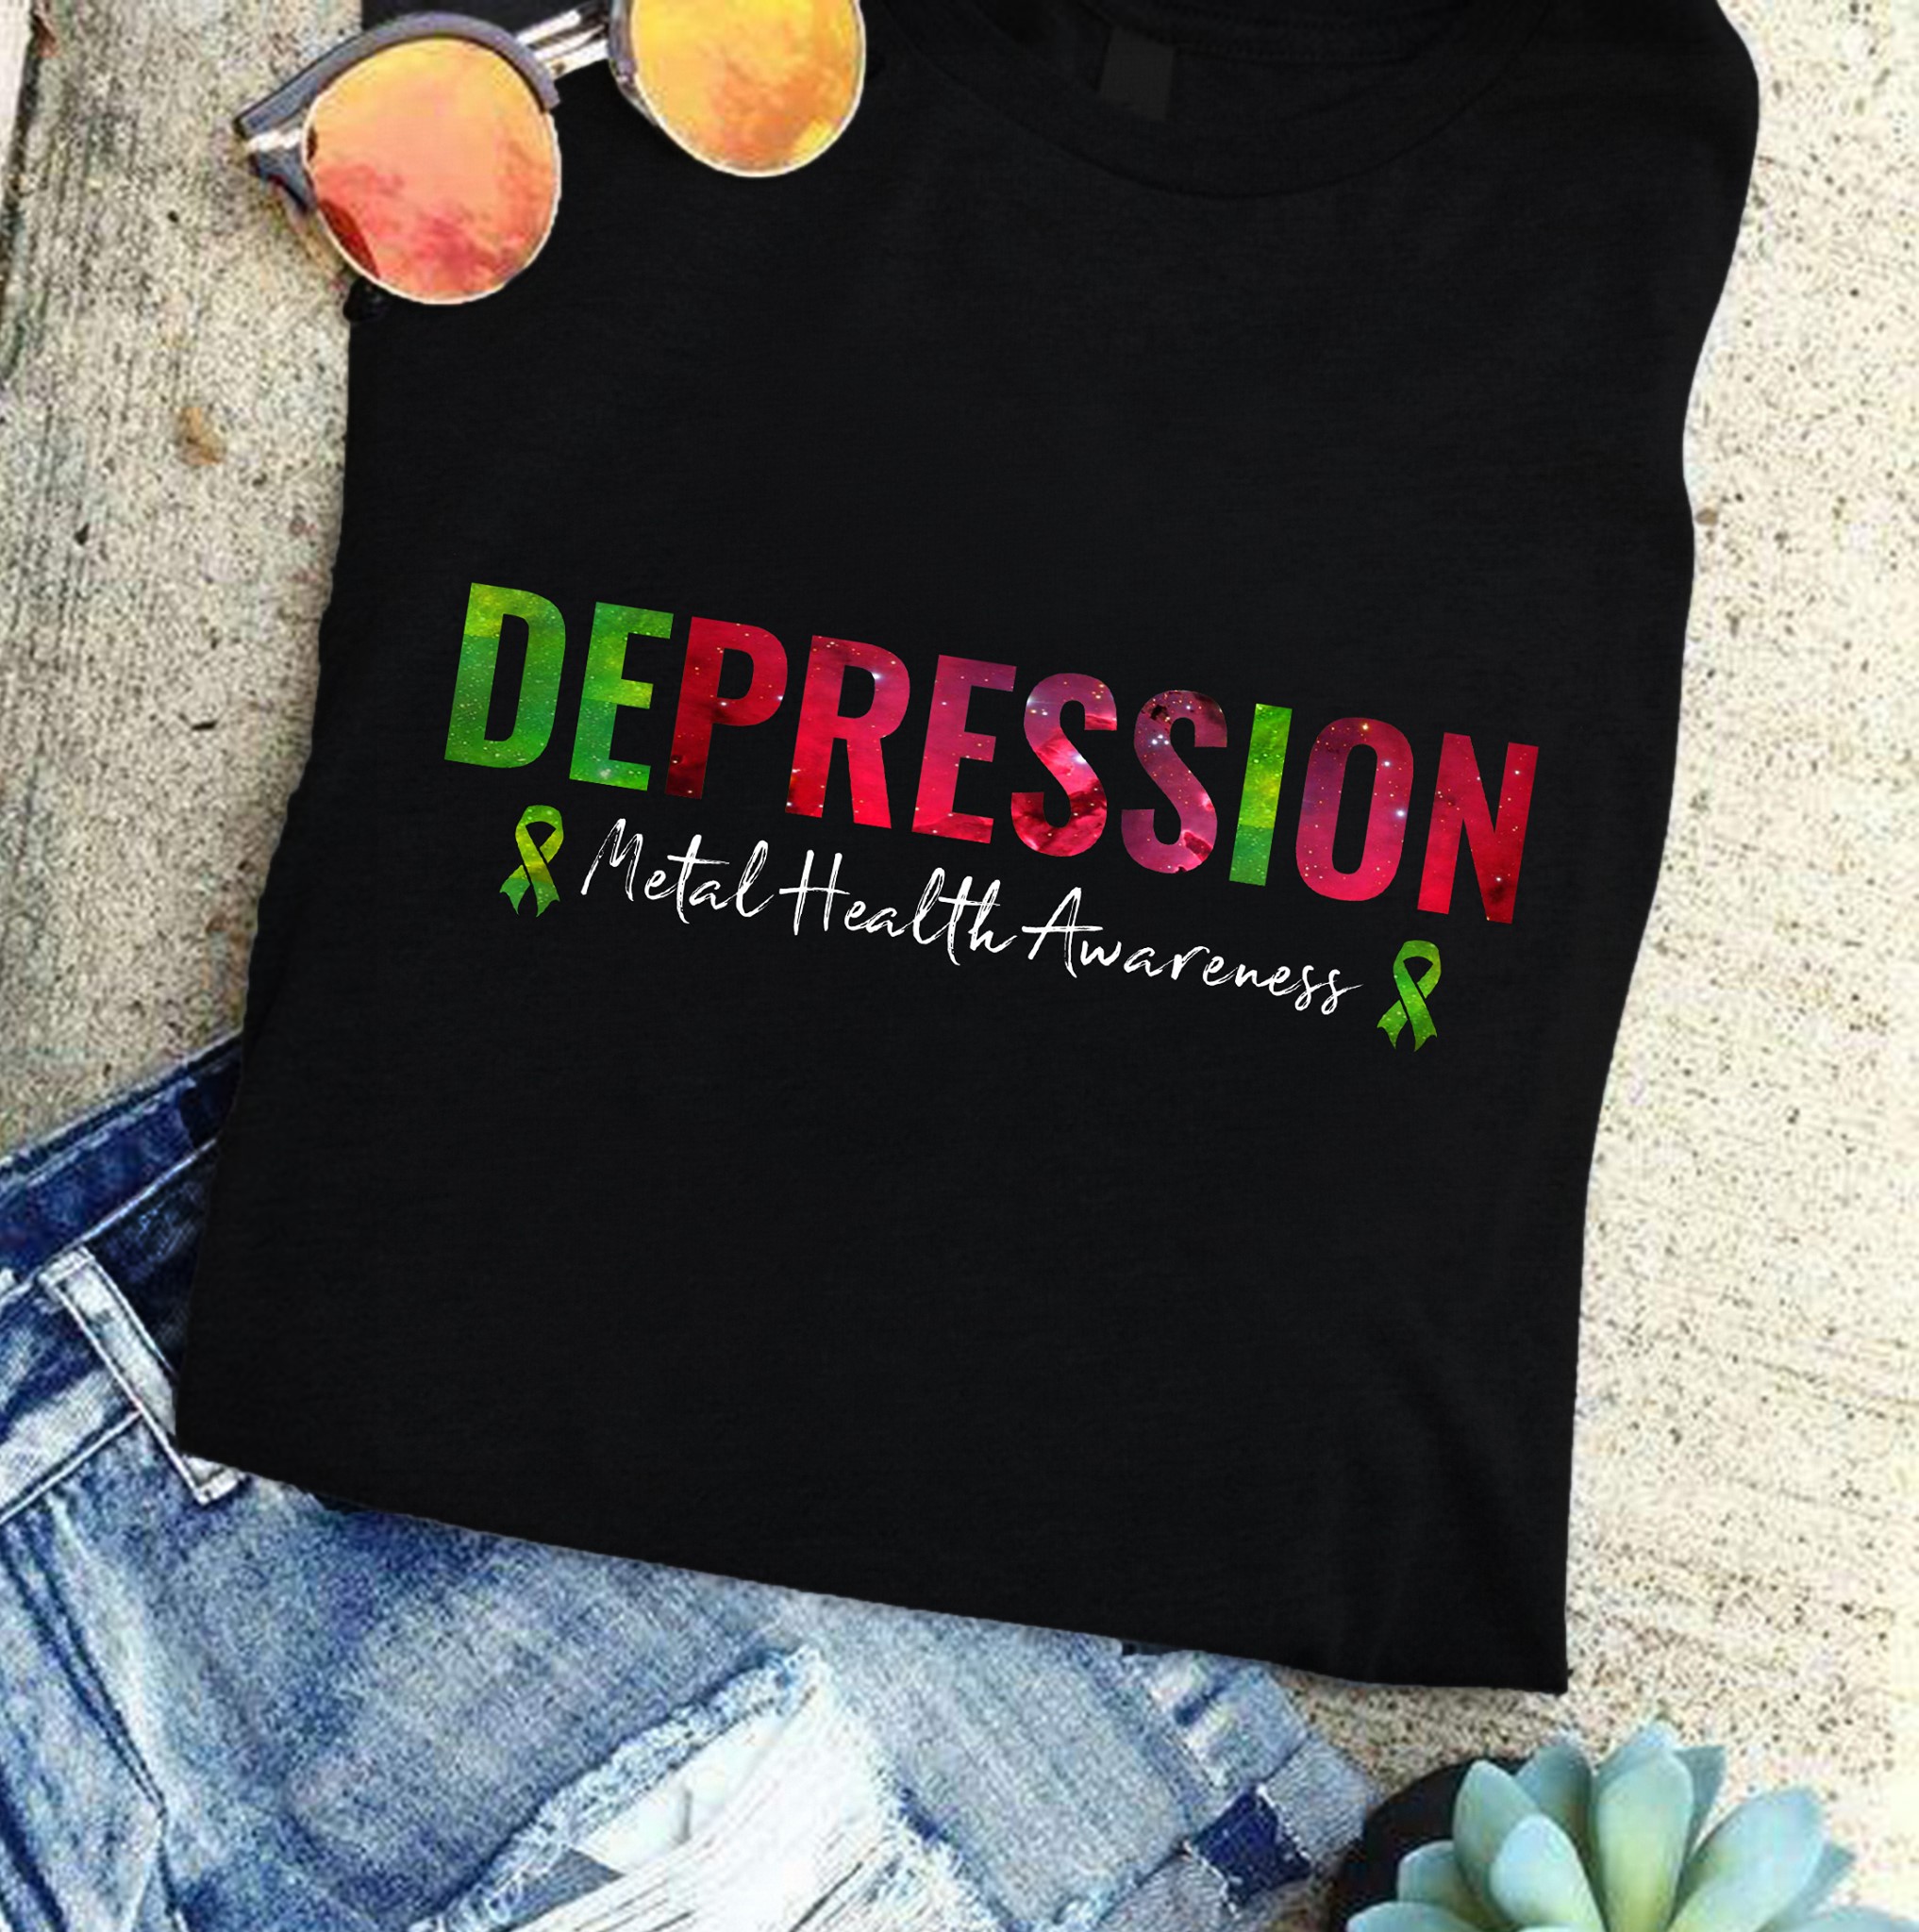 Depression - Mental health awareness, mental cares